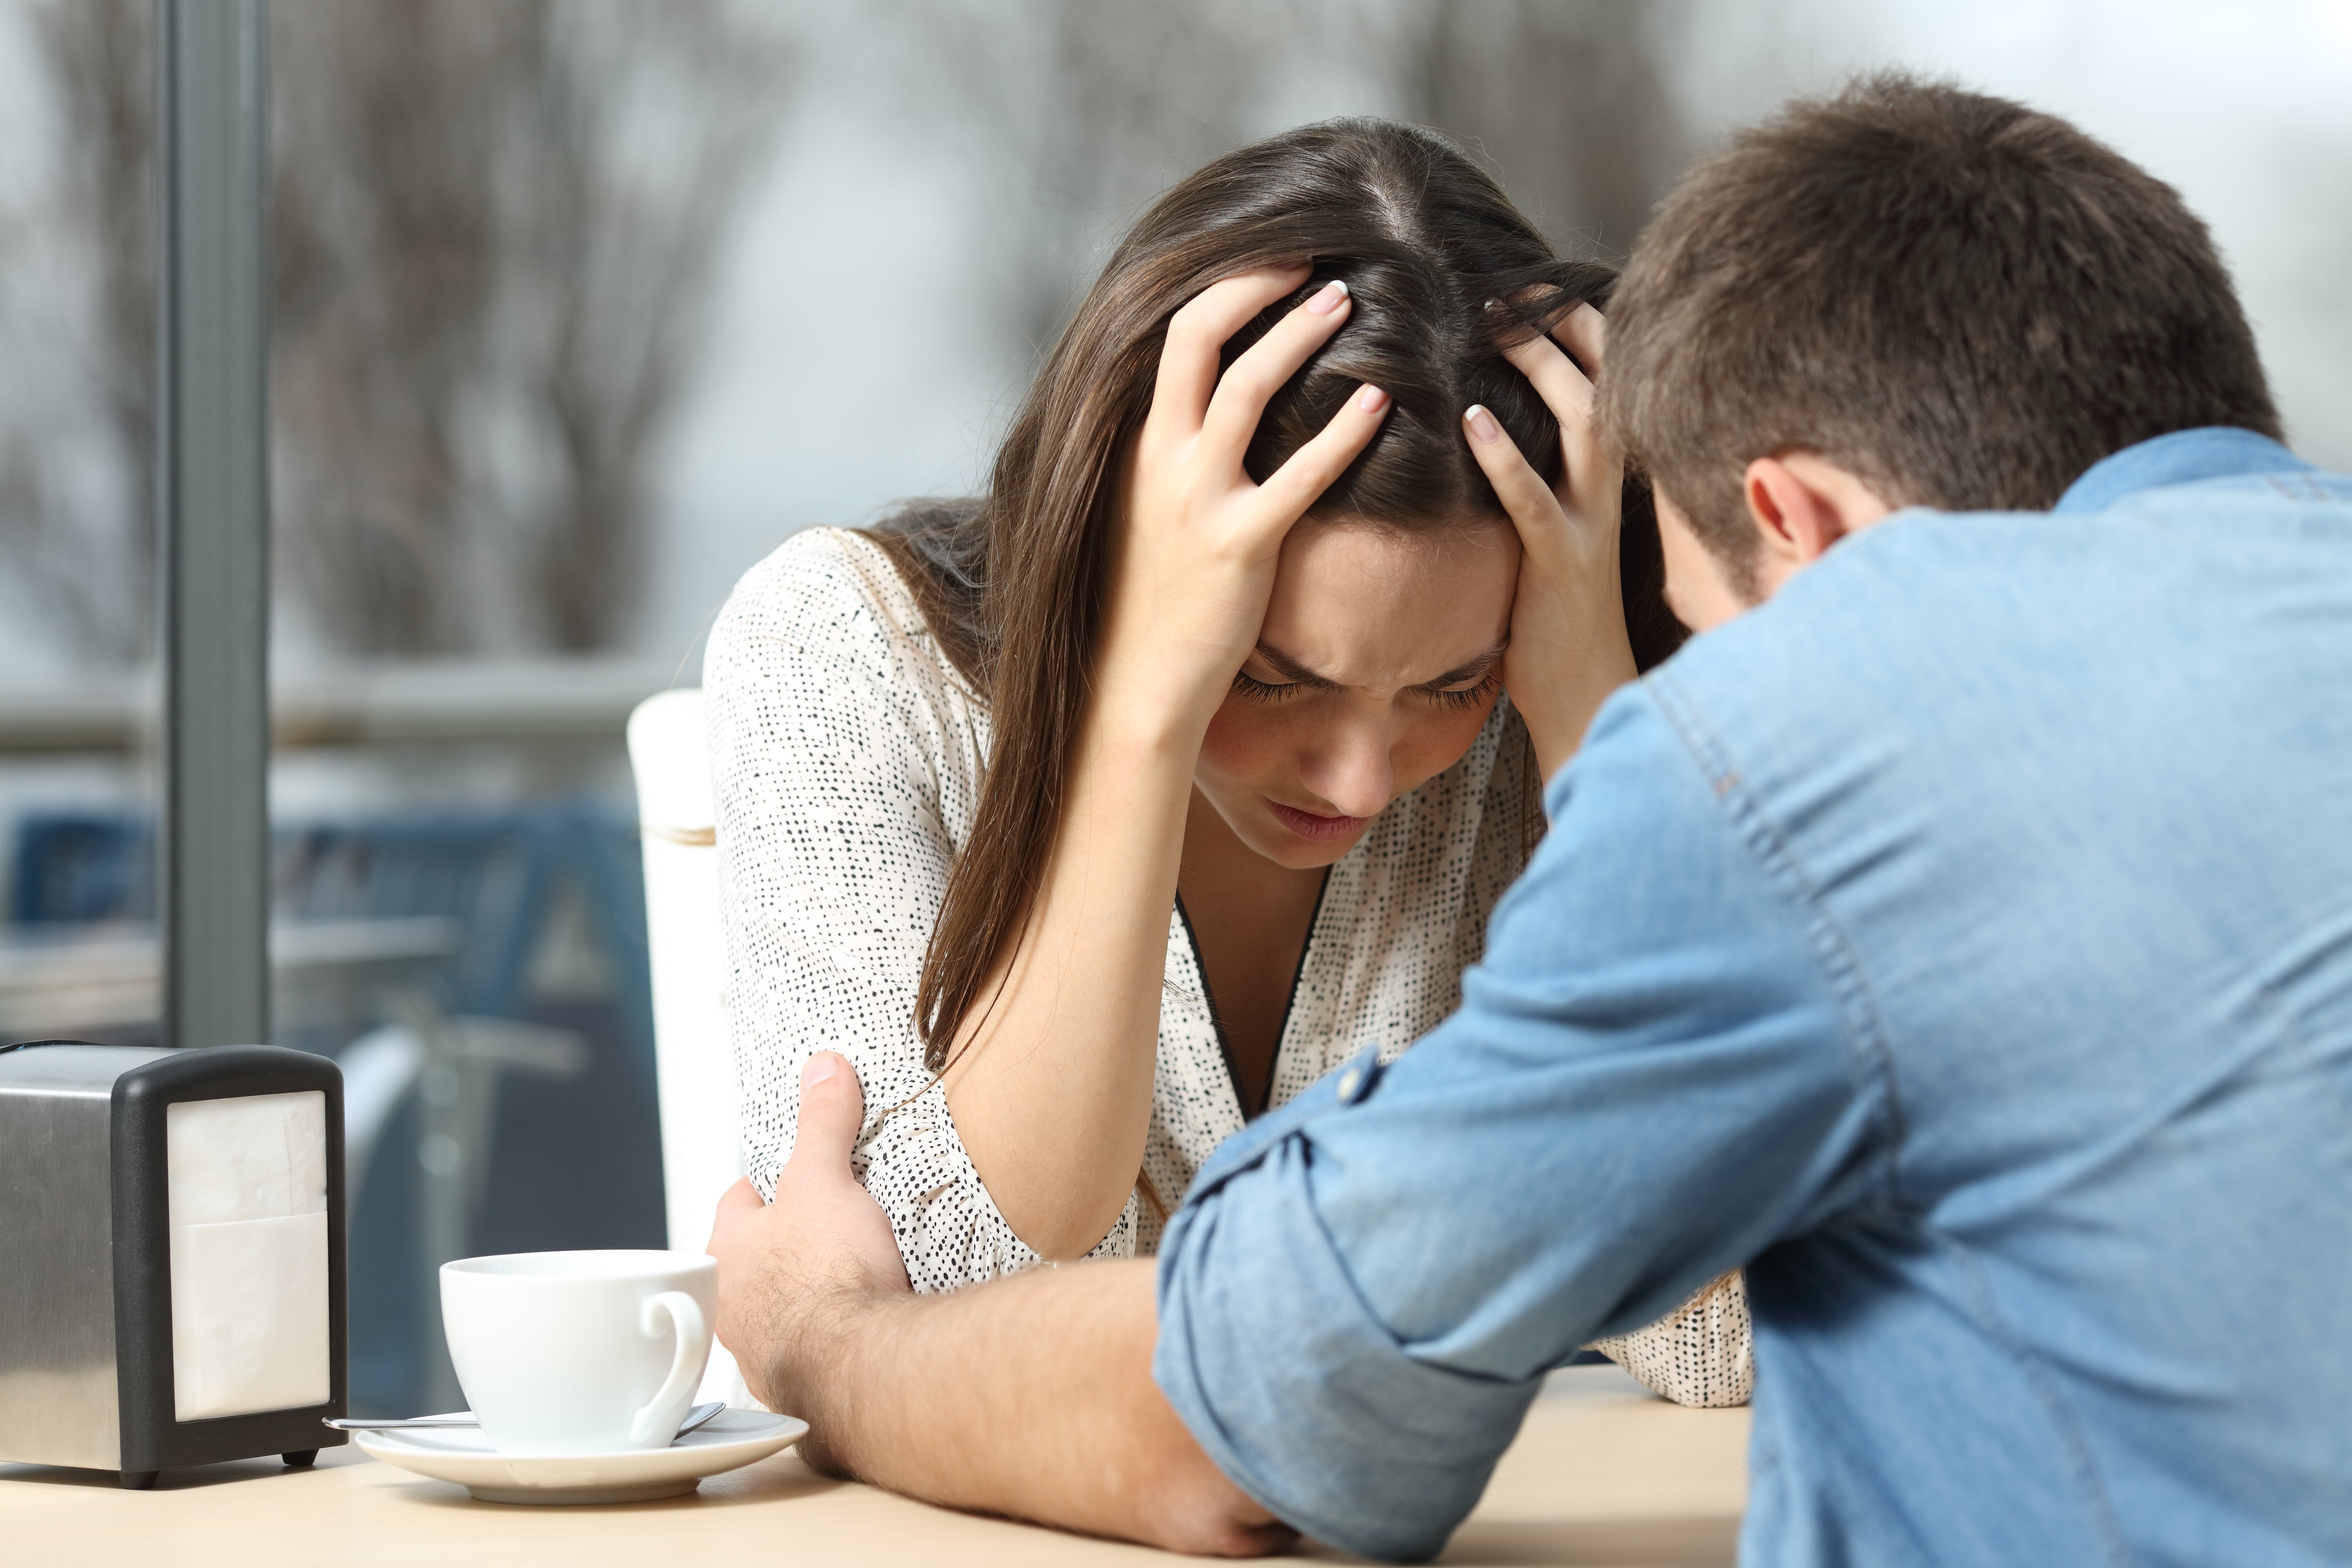 Mann tröstet eine traurige depressive Frau, die Hilfe in einem Café braucht | Quelle: Shutterstock